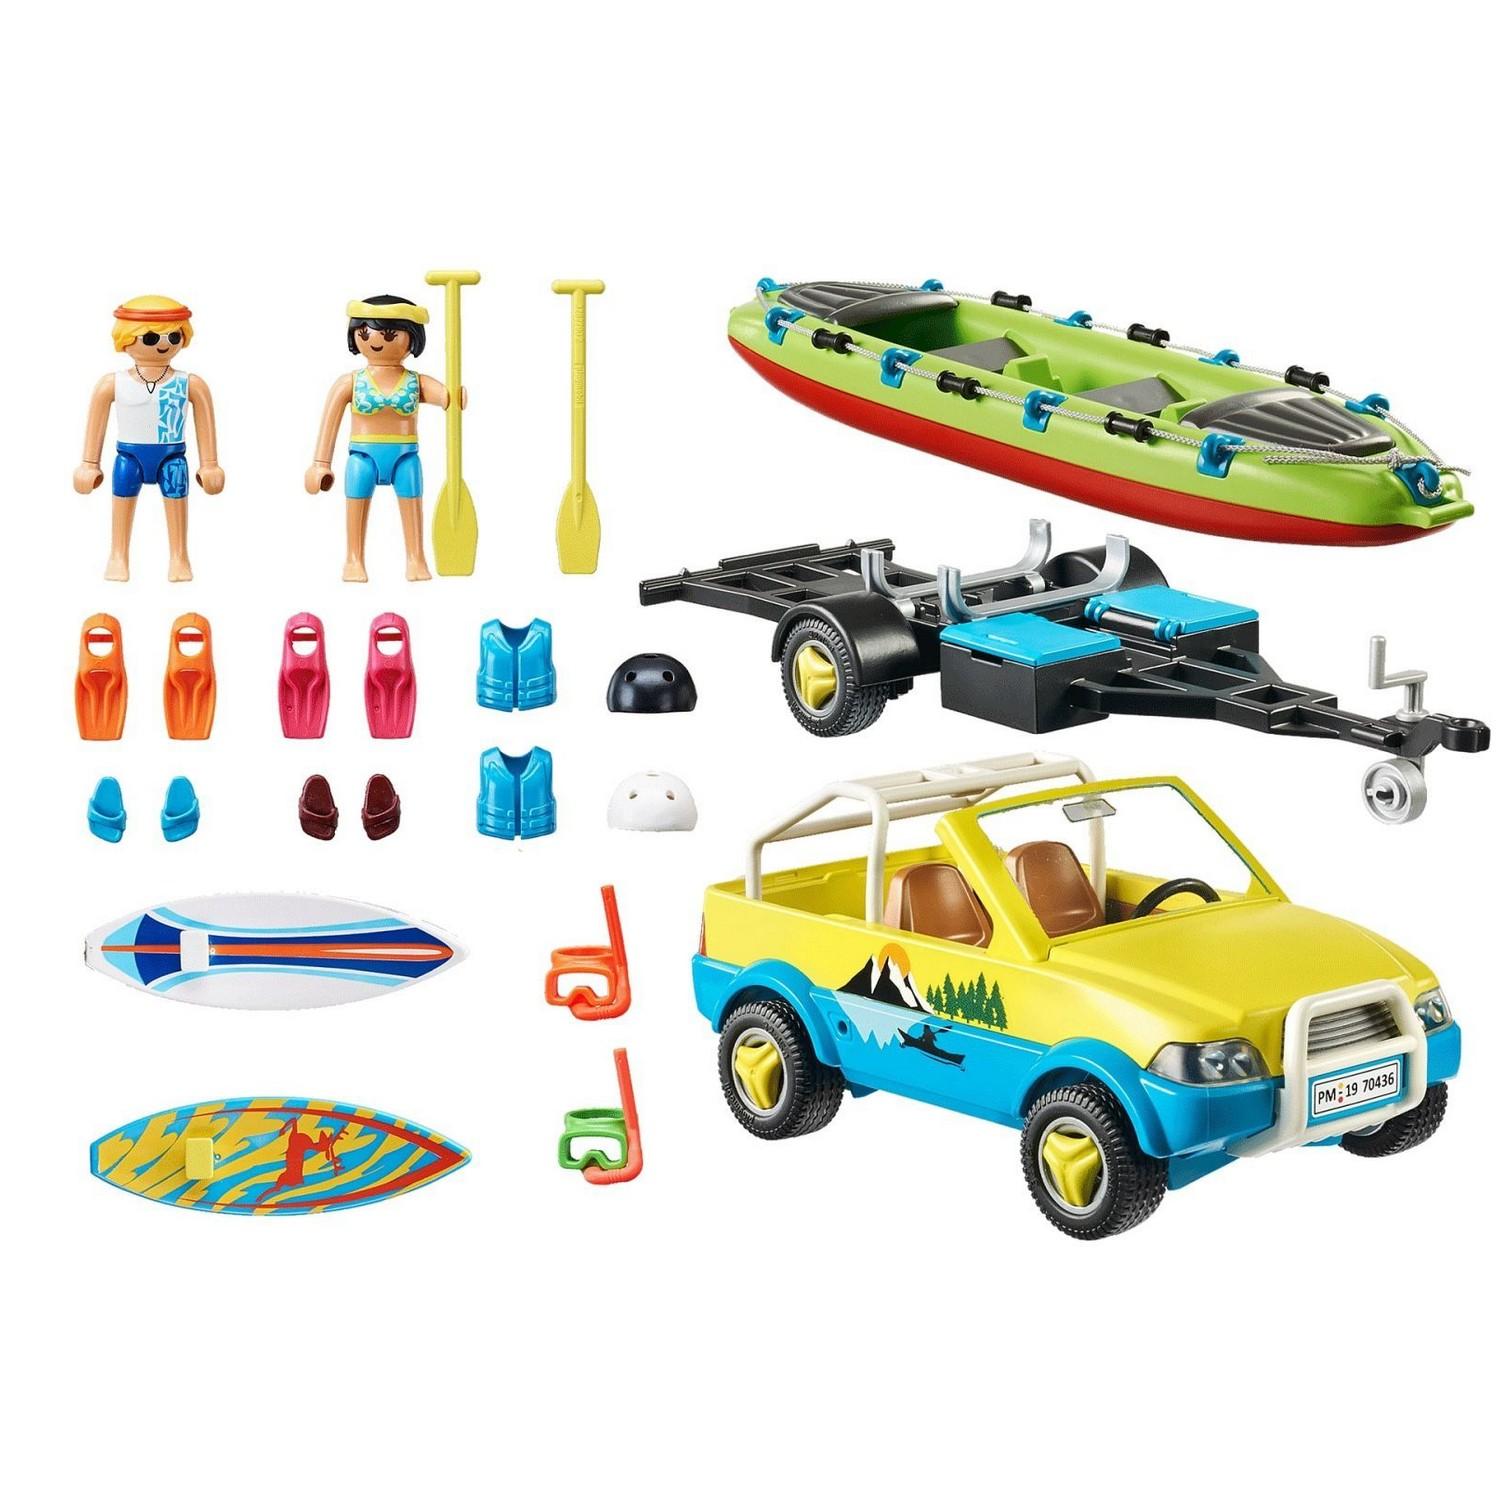 Playmobil 70434 Family Fun : Playmo beach hotel - Jeux et jouets Playmobil  - Avenue des Jeux